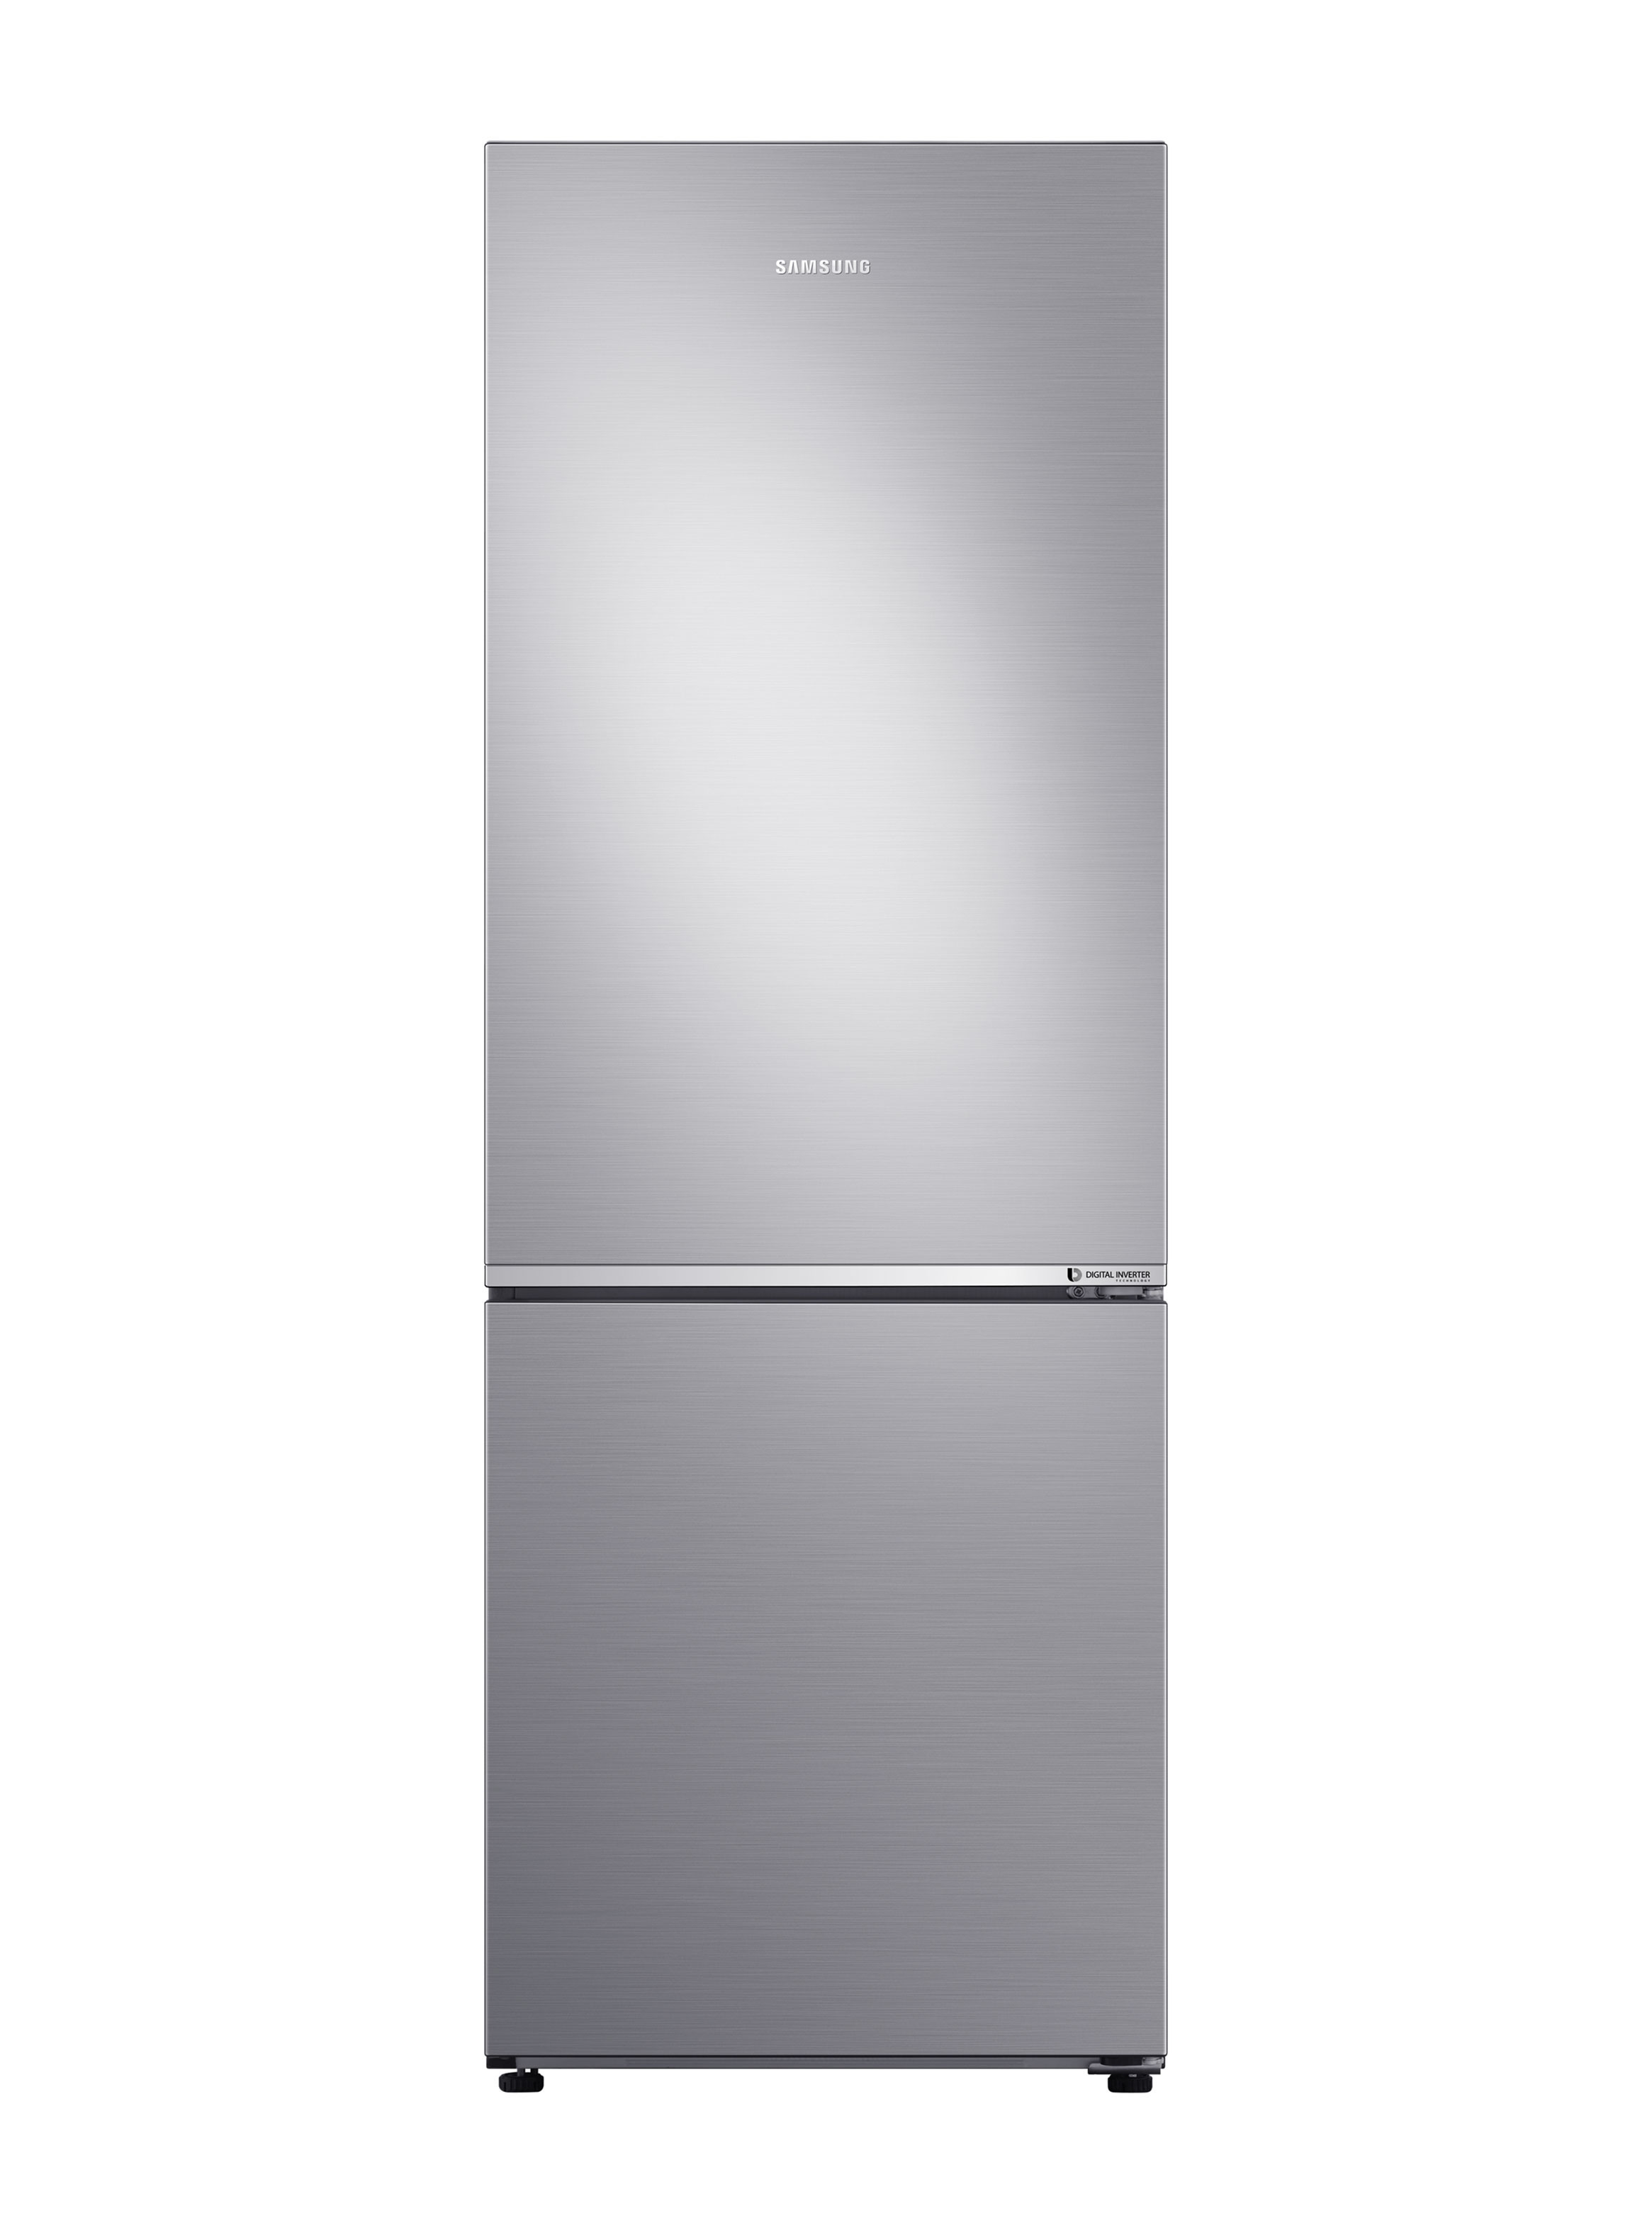 Refrigerador no frost 290 litros RB30N4020S8/ZS inox Samsung